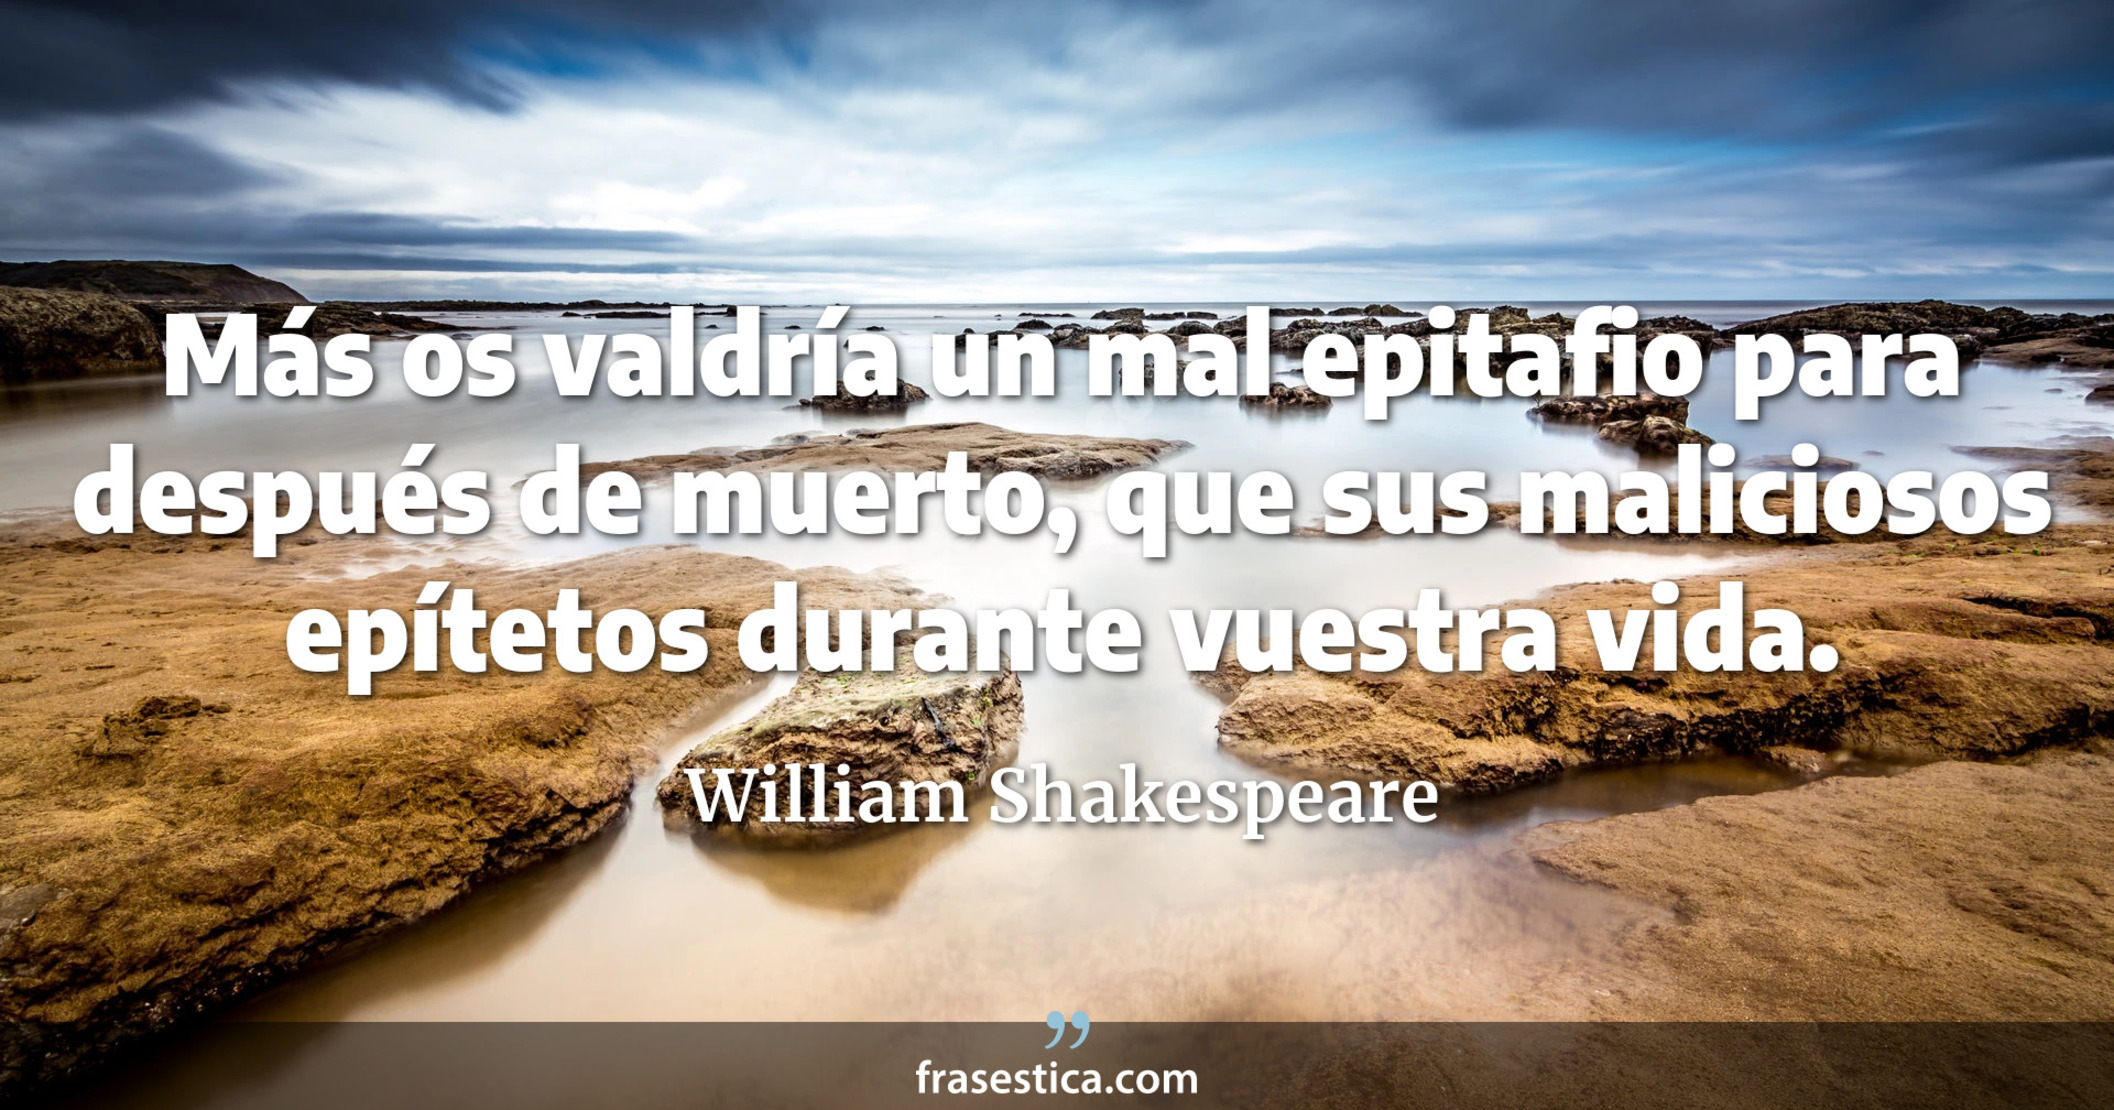 Más os valdría un mal epitafio para después de muerto, que sus maliciosos epítetos durante vuestra vida. - William Shakespeare